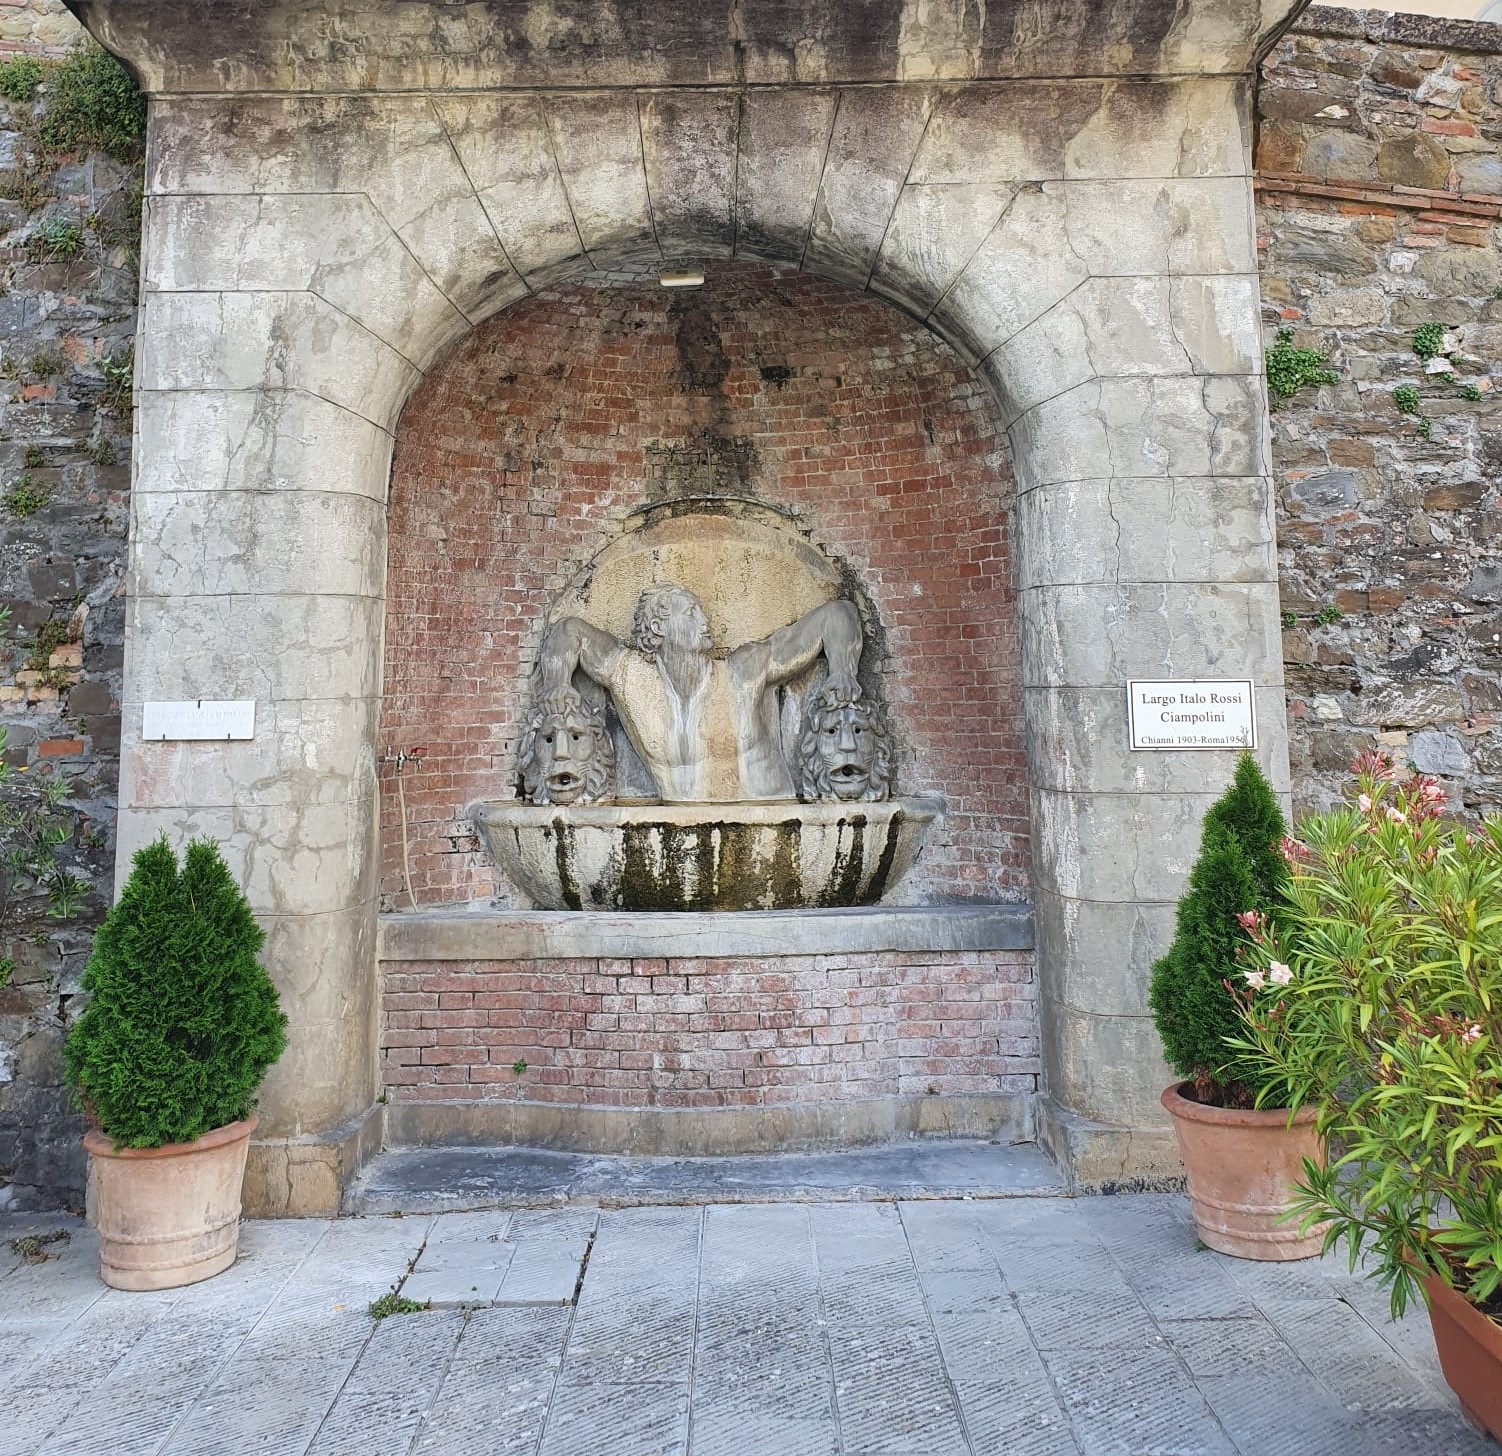 Restauro di antica fontana, Chianni, Pisa